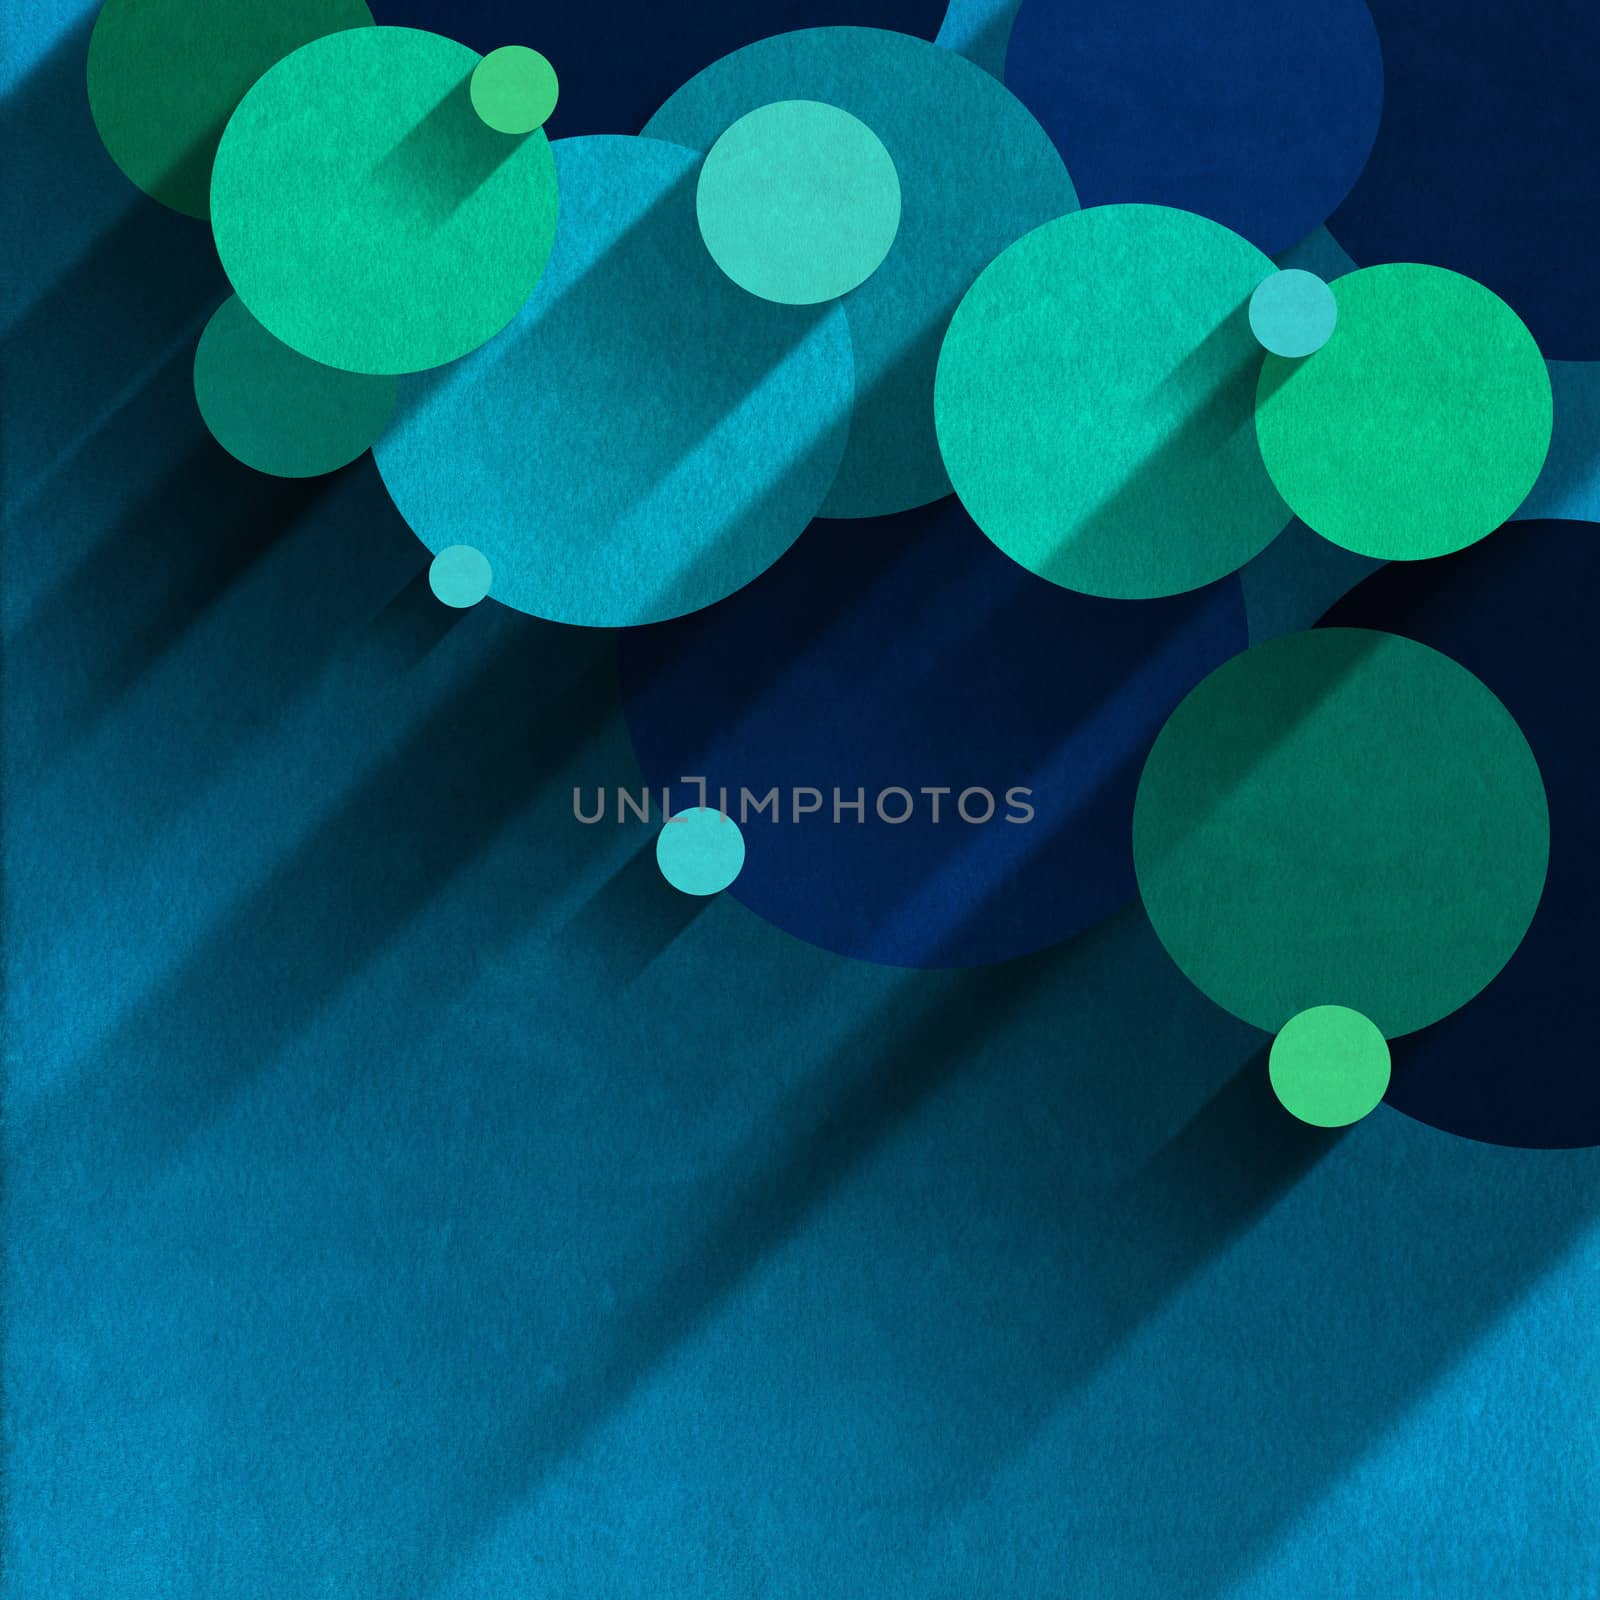 Circles of velvet, blue and green on light blue velvet background with shadows